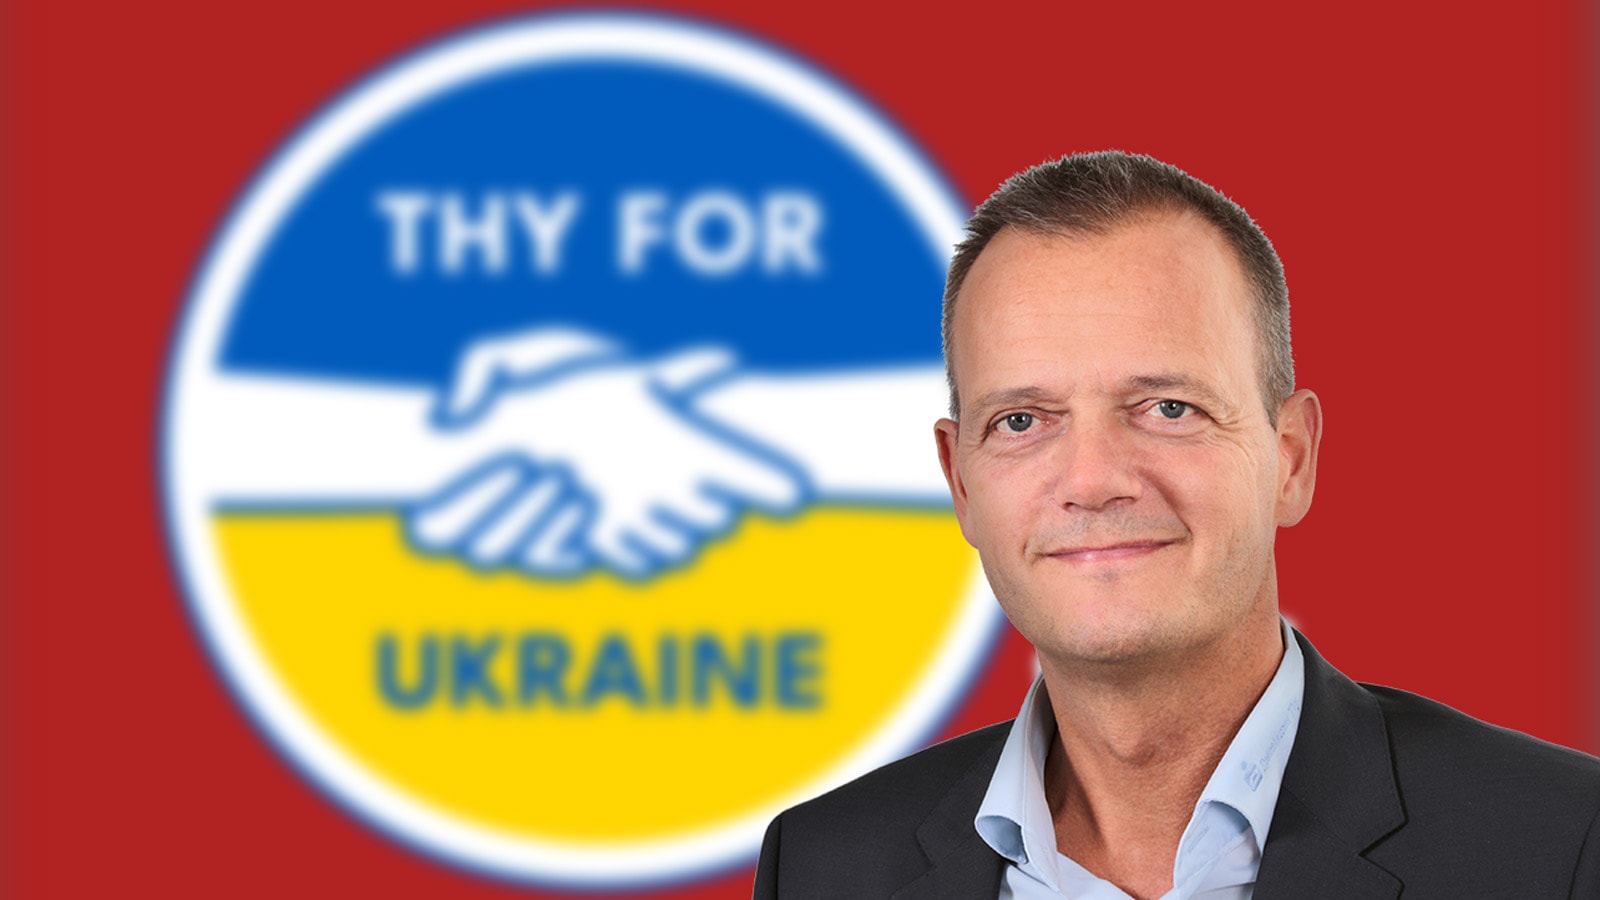 Direktør Ole Beith, og logoet for Thy for Ukraine